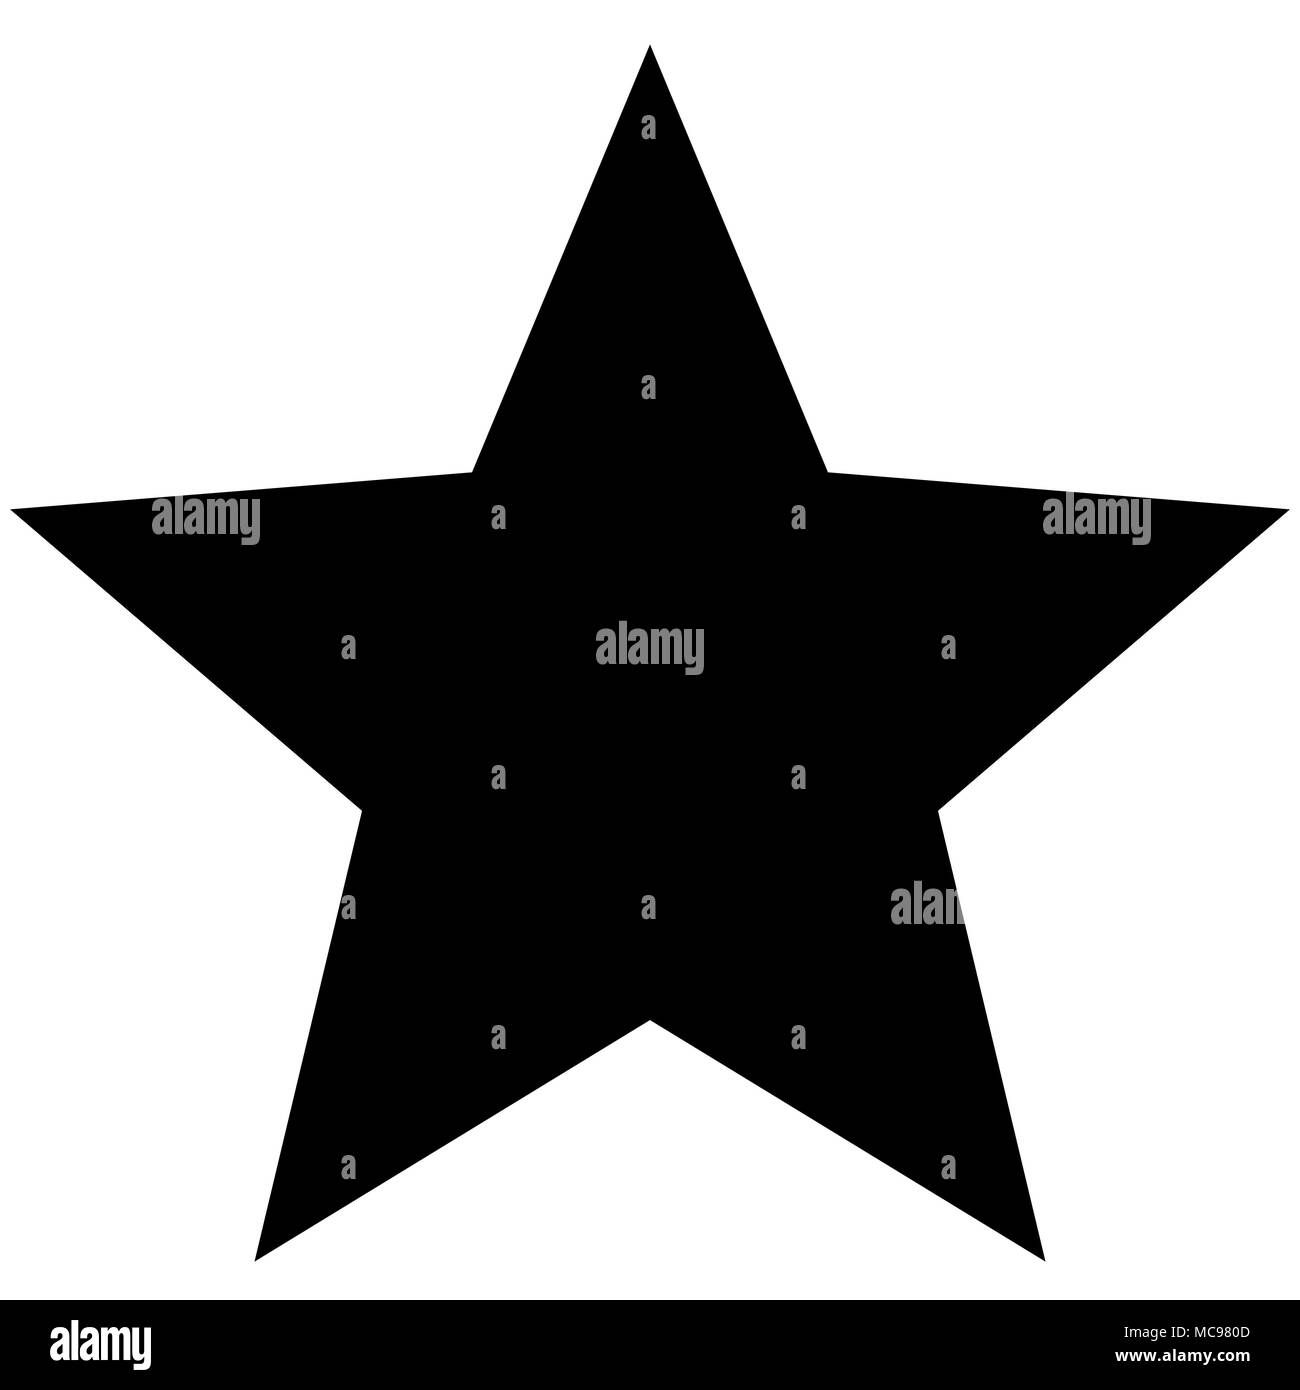 Minimalistic black star icon template Stock Vector